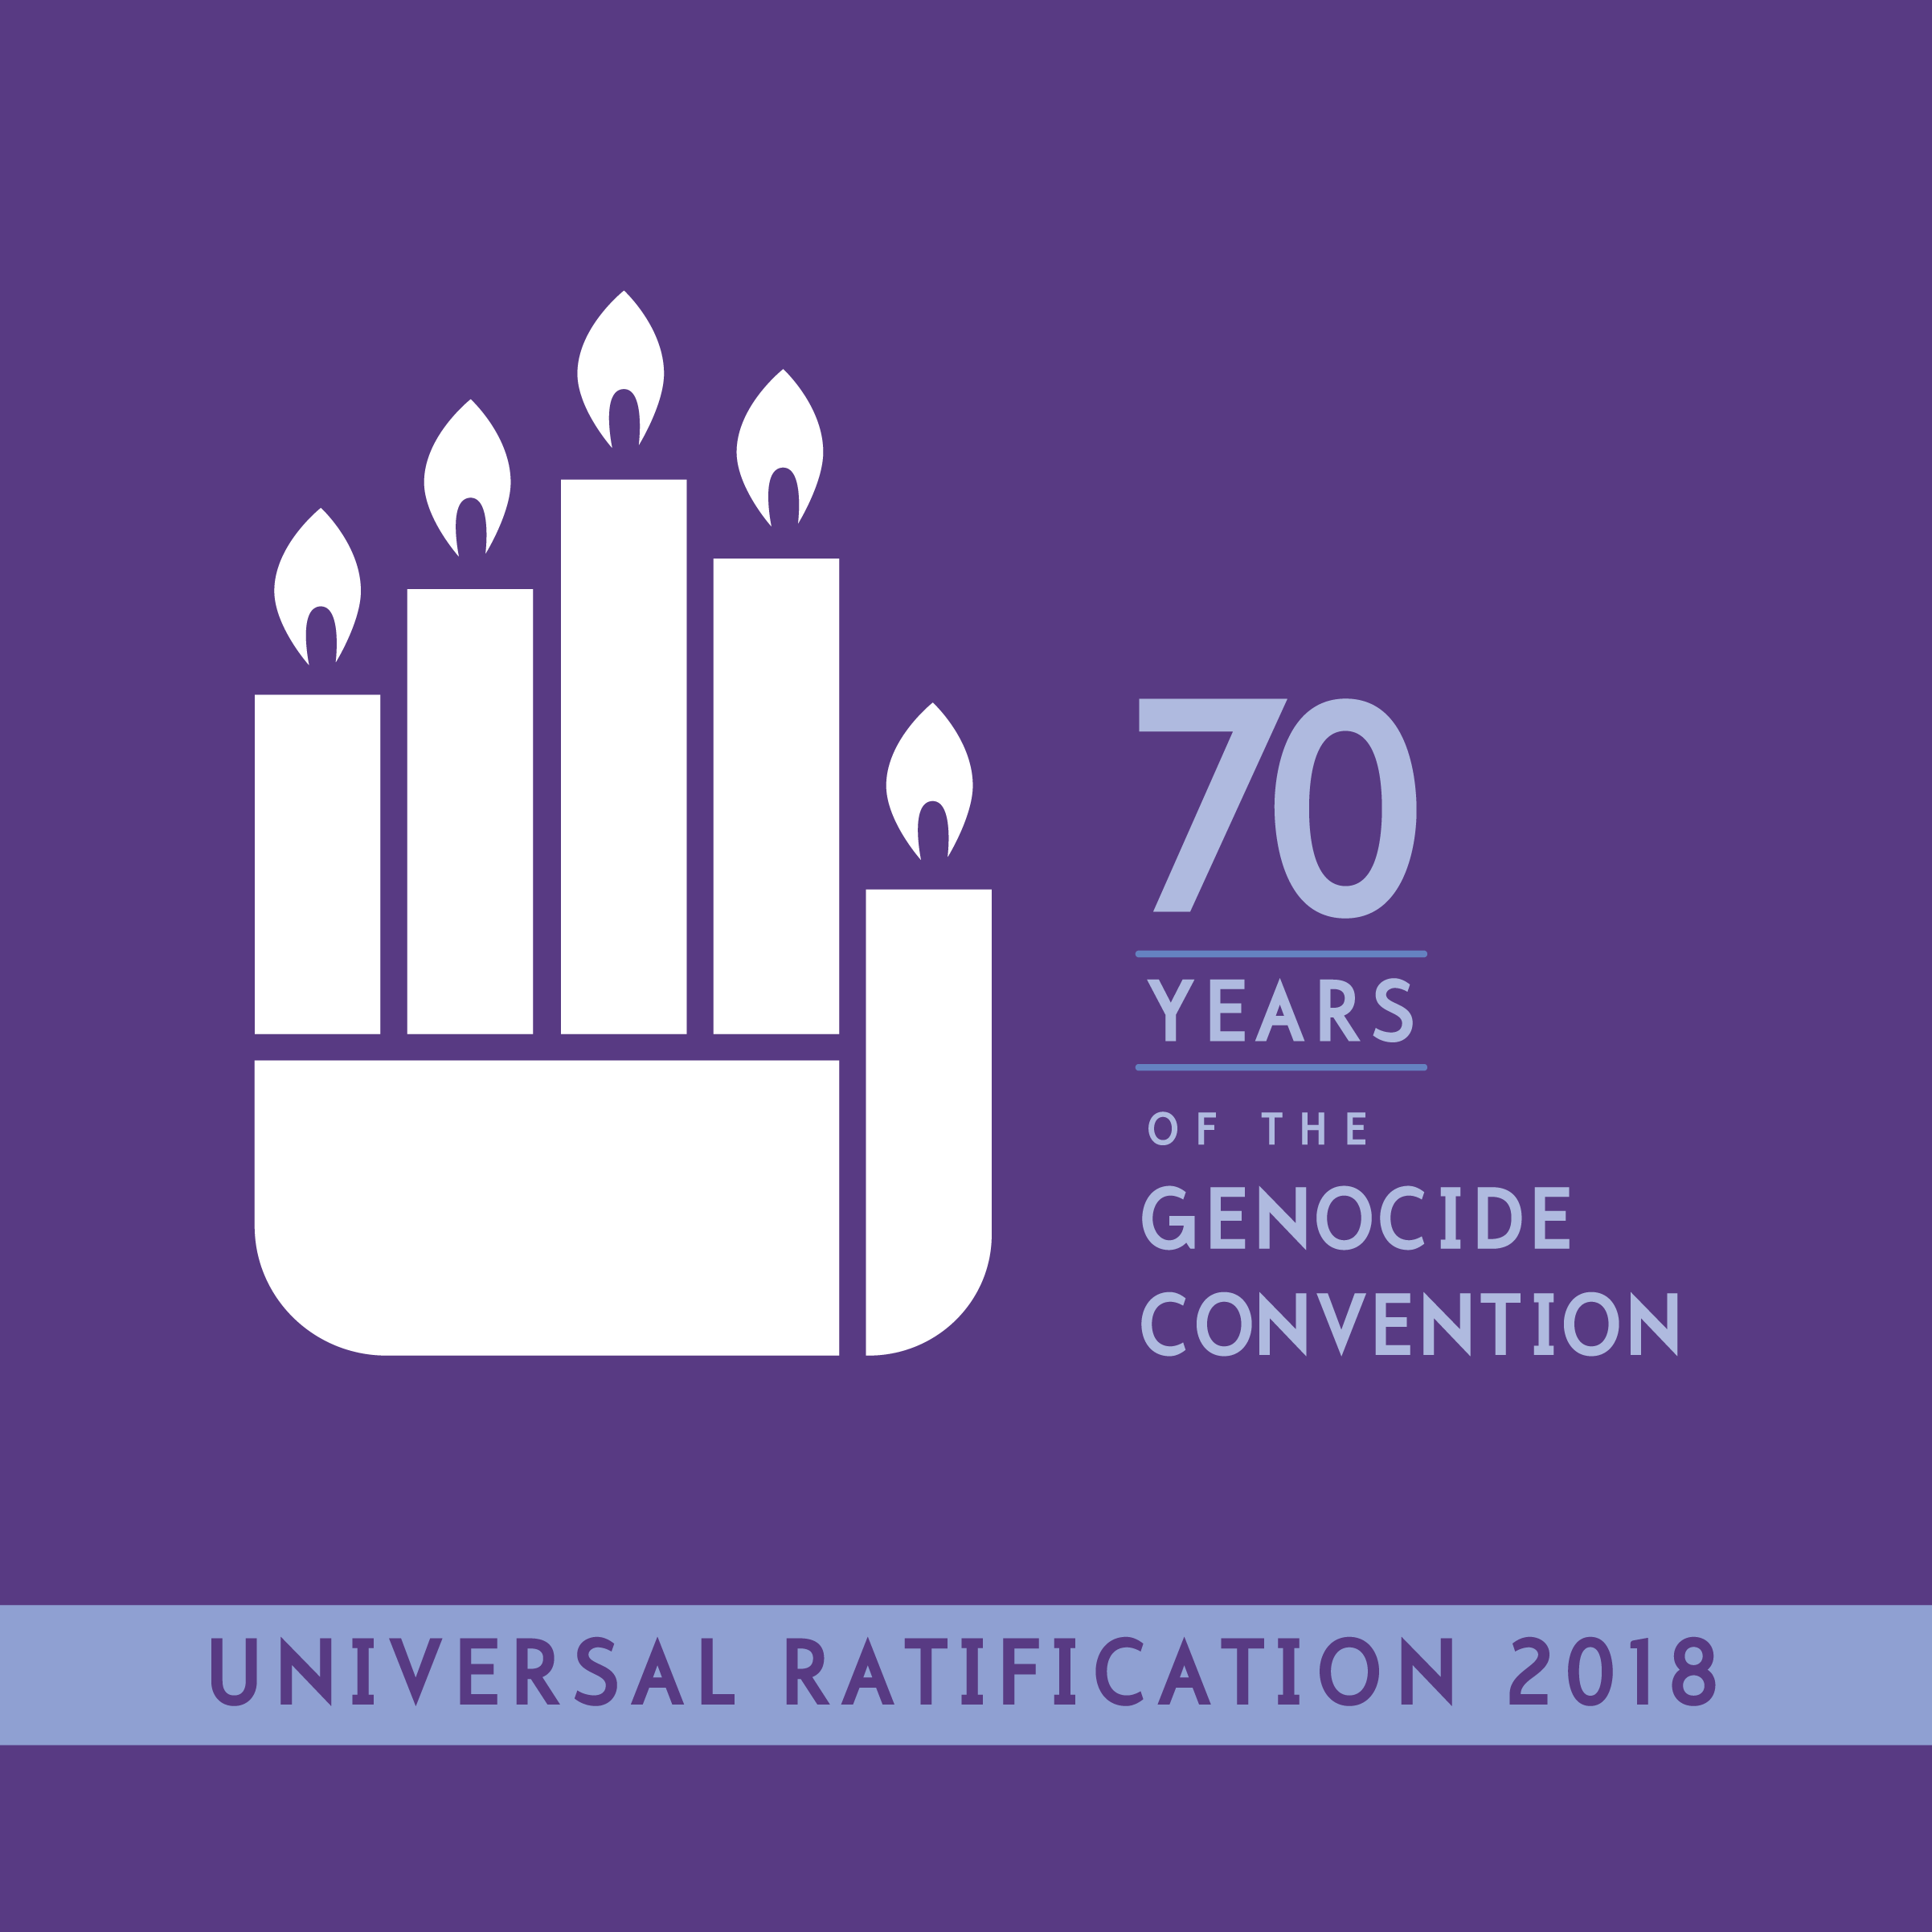 Affiche des 70 ans de ratification universelle de la Convention sur le génocide 2018